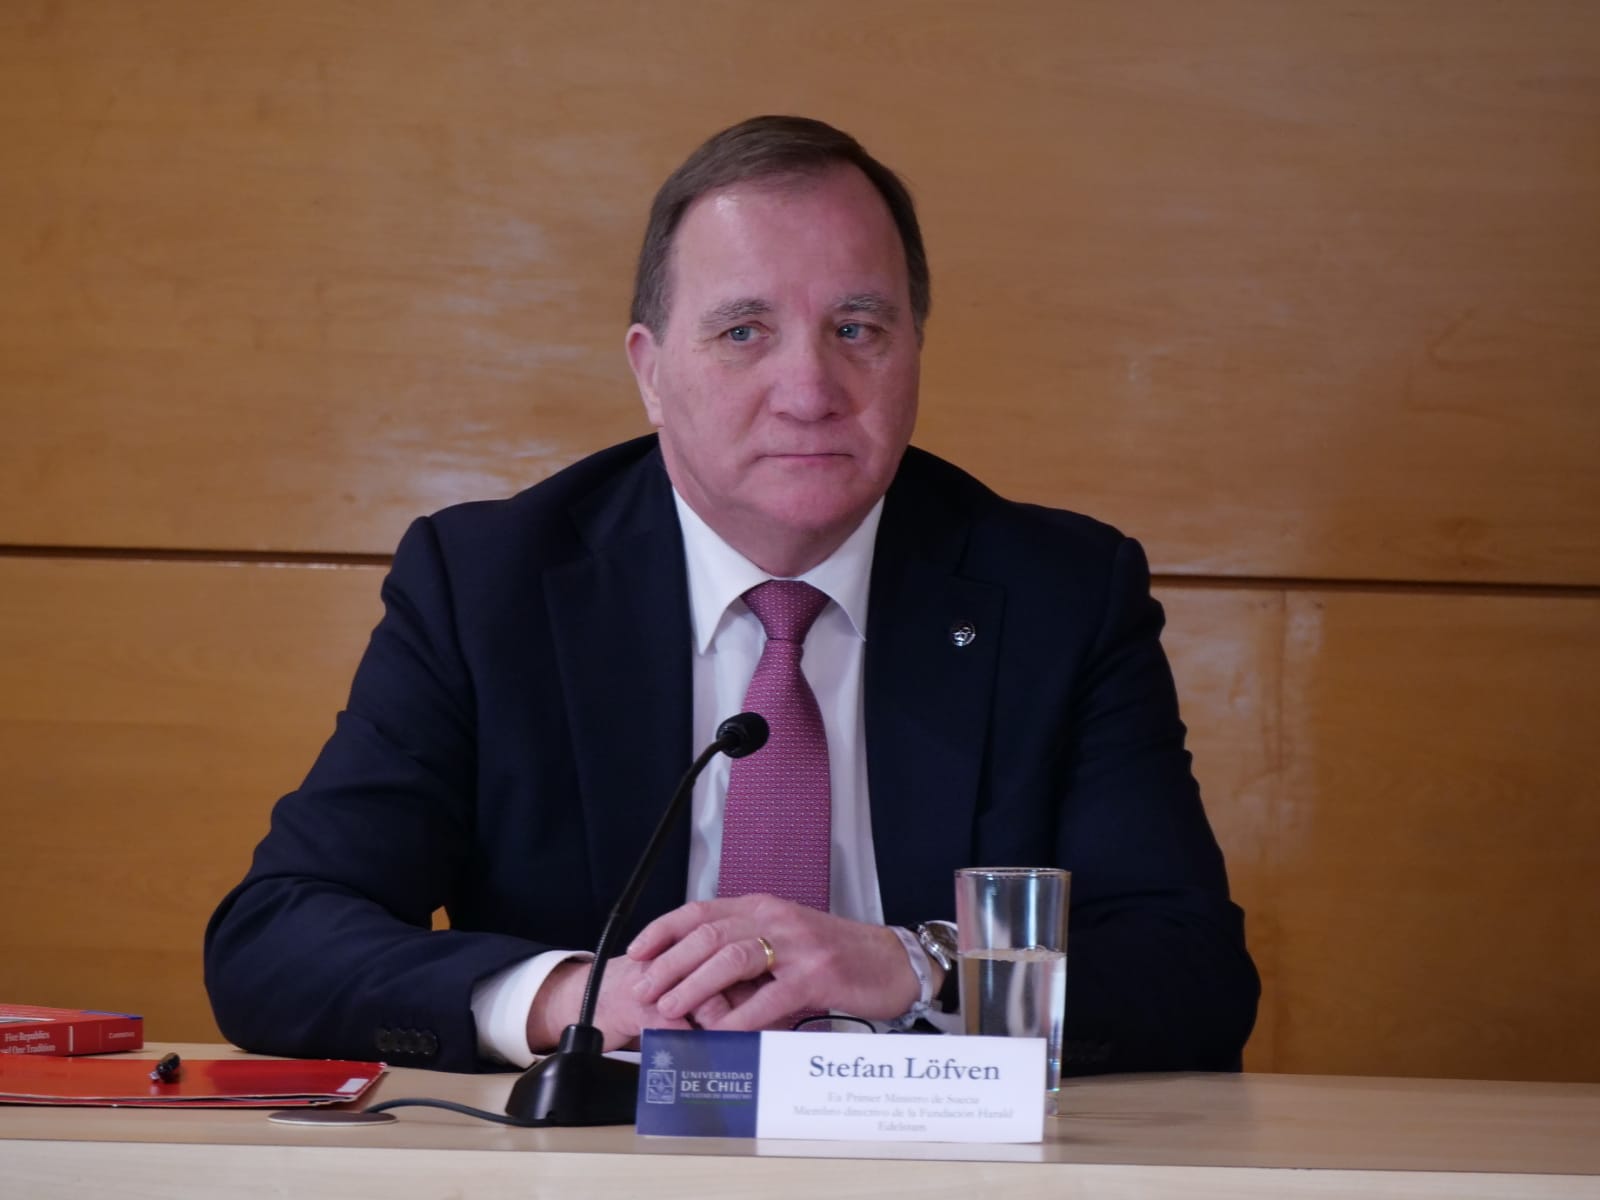 La actividad contó con la presencia de Stefan Löfven, integrante de la mesa directiva de la Fundación Edelstam y ex Primer Ministro de Suecia.